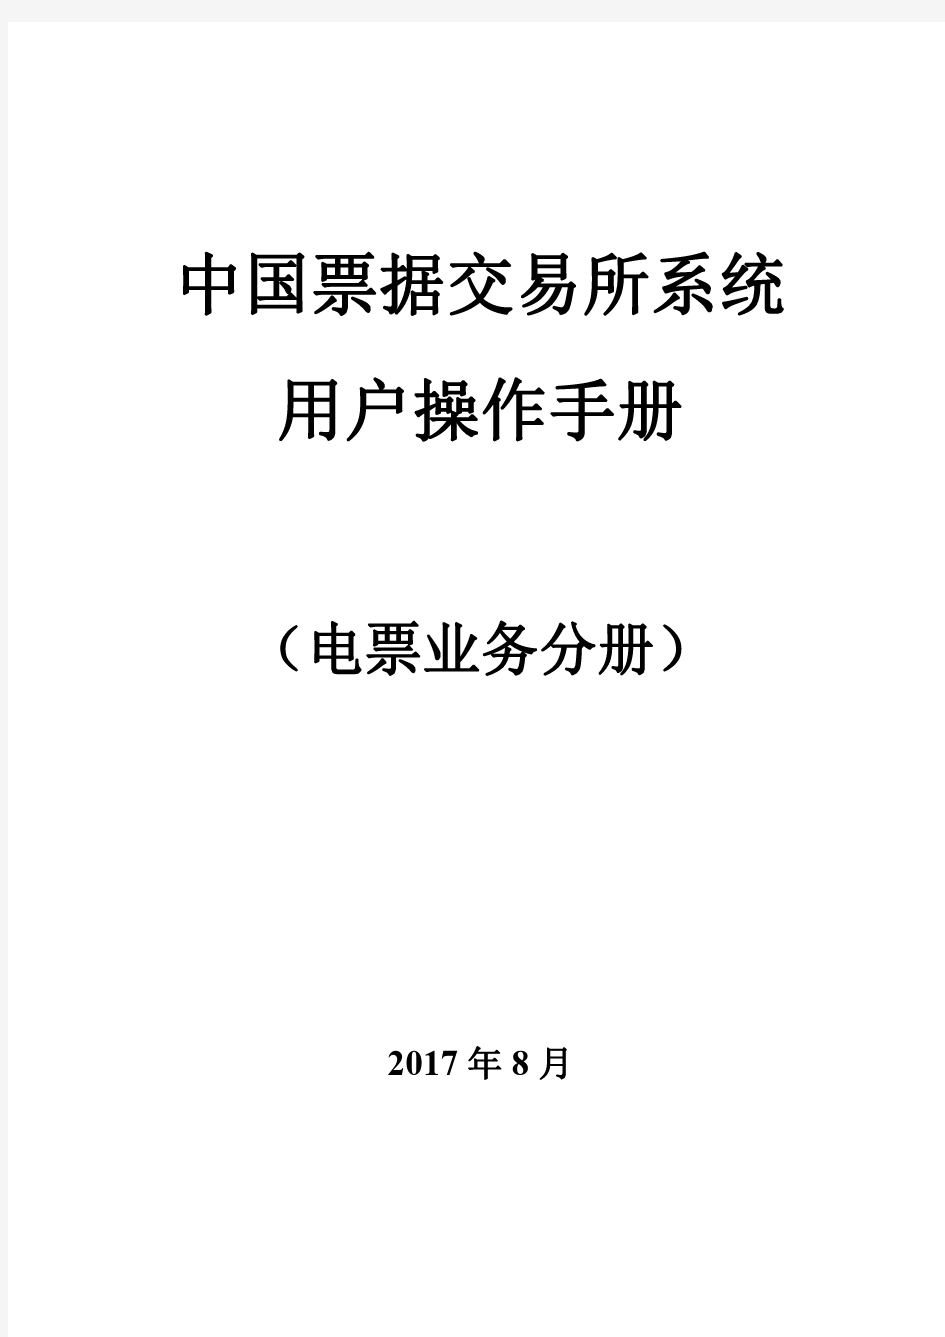 中国票据交易系统用户操作手册-上海票据交易所